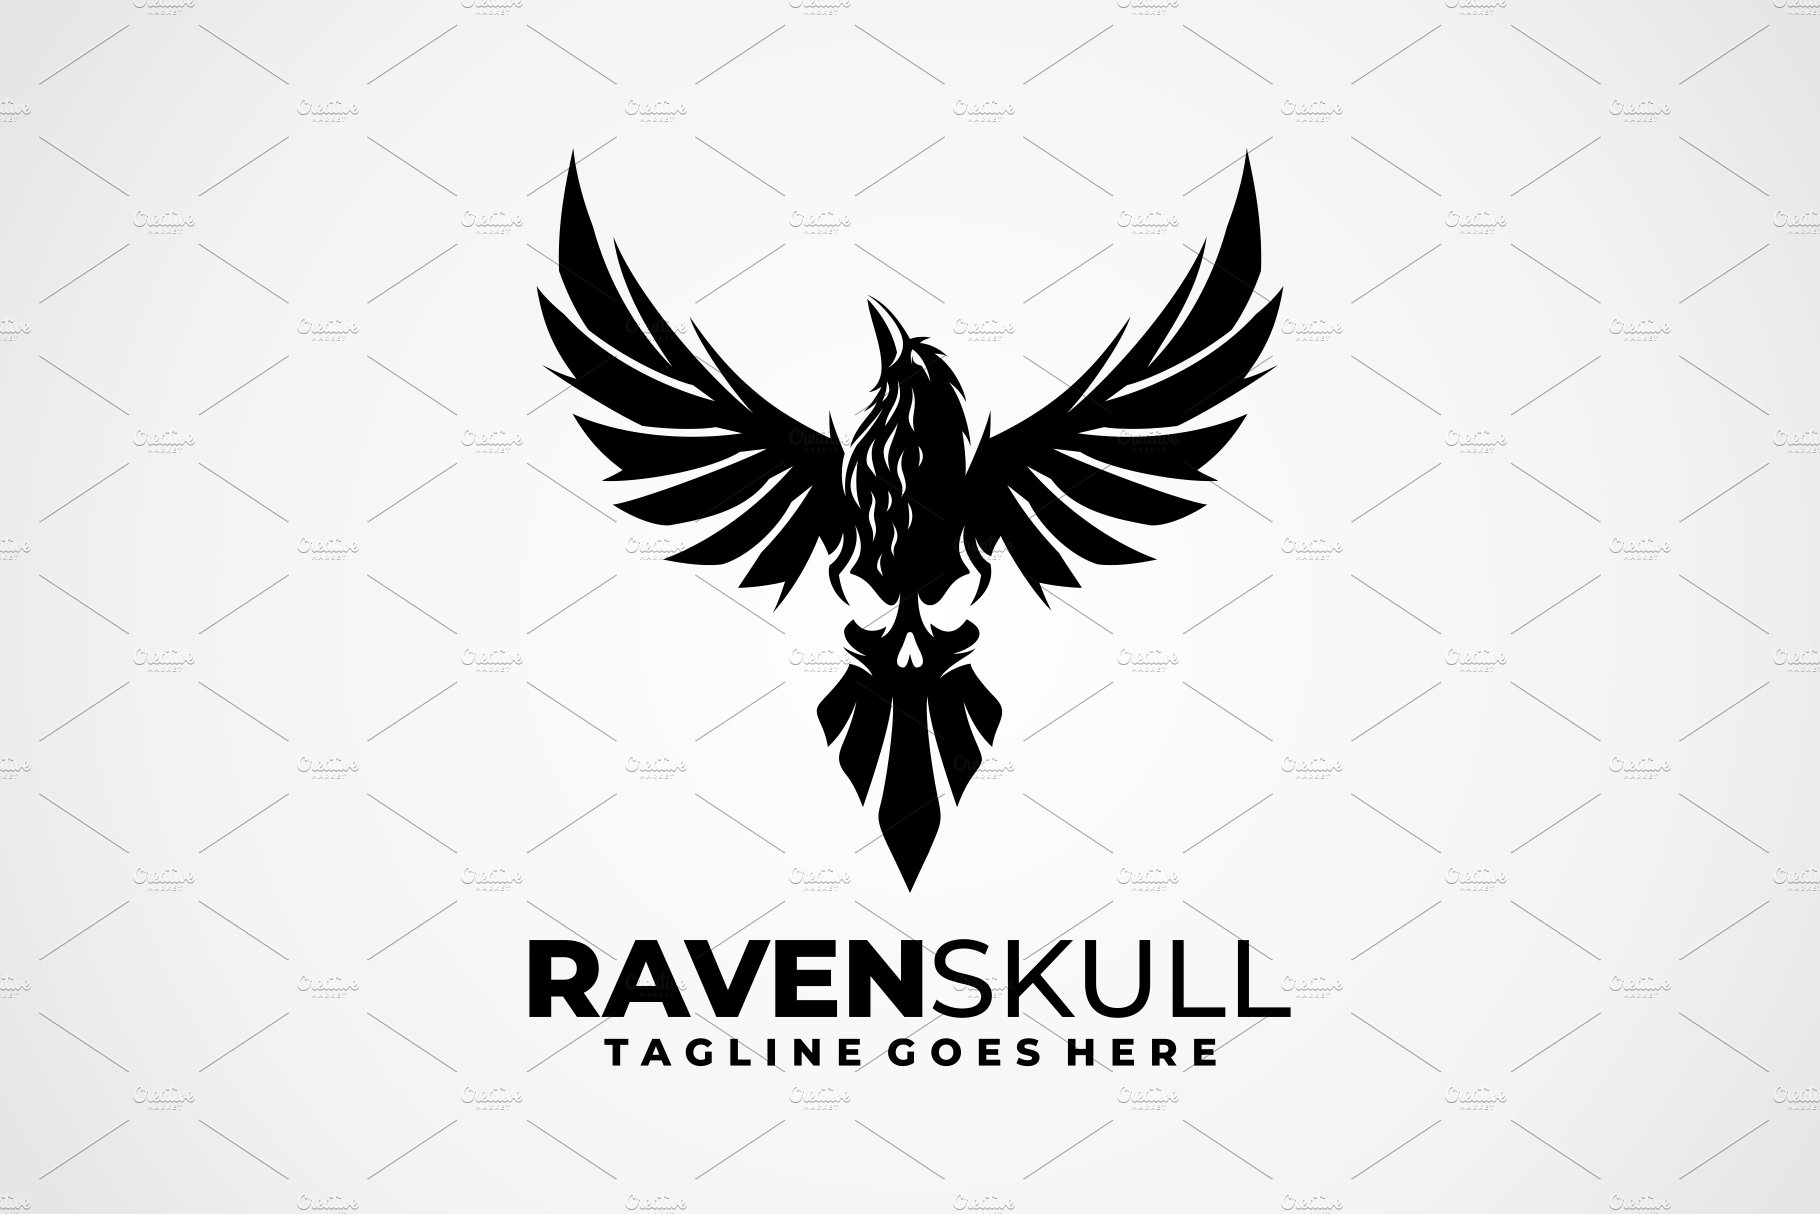 Raven Skull Logo cover image.